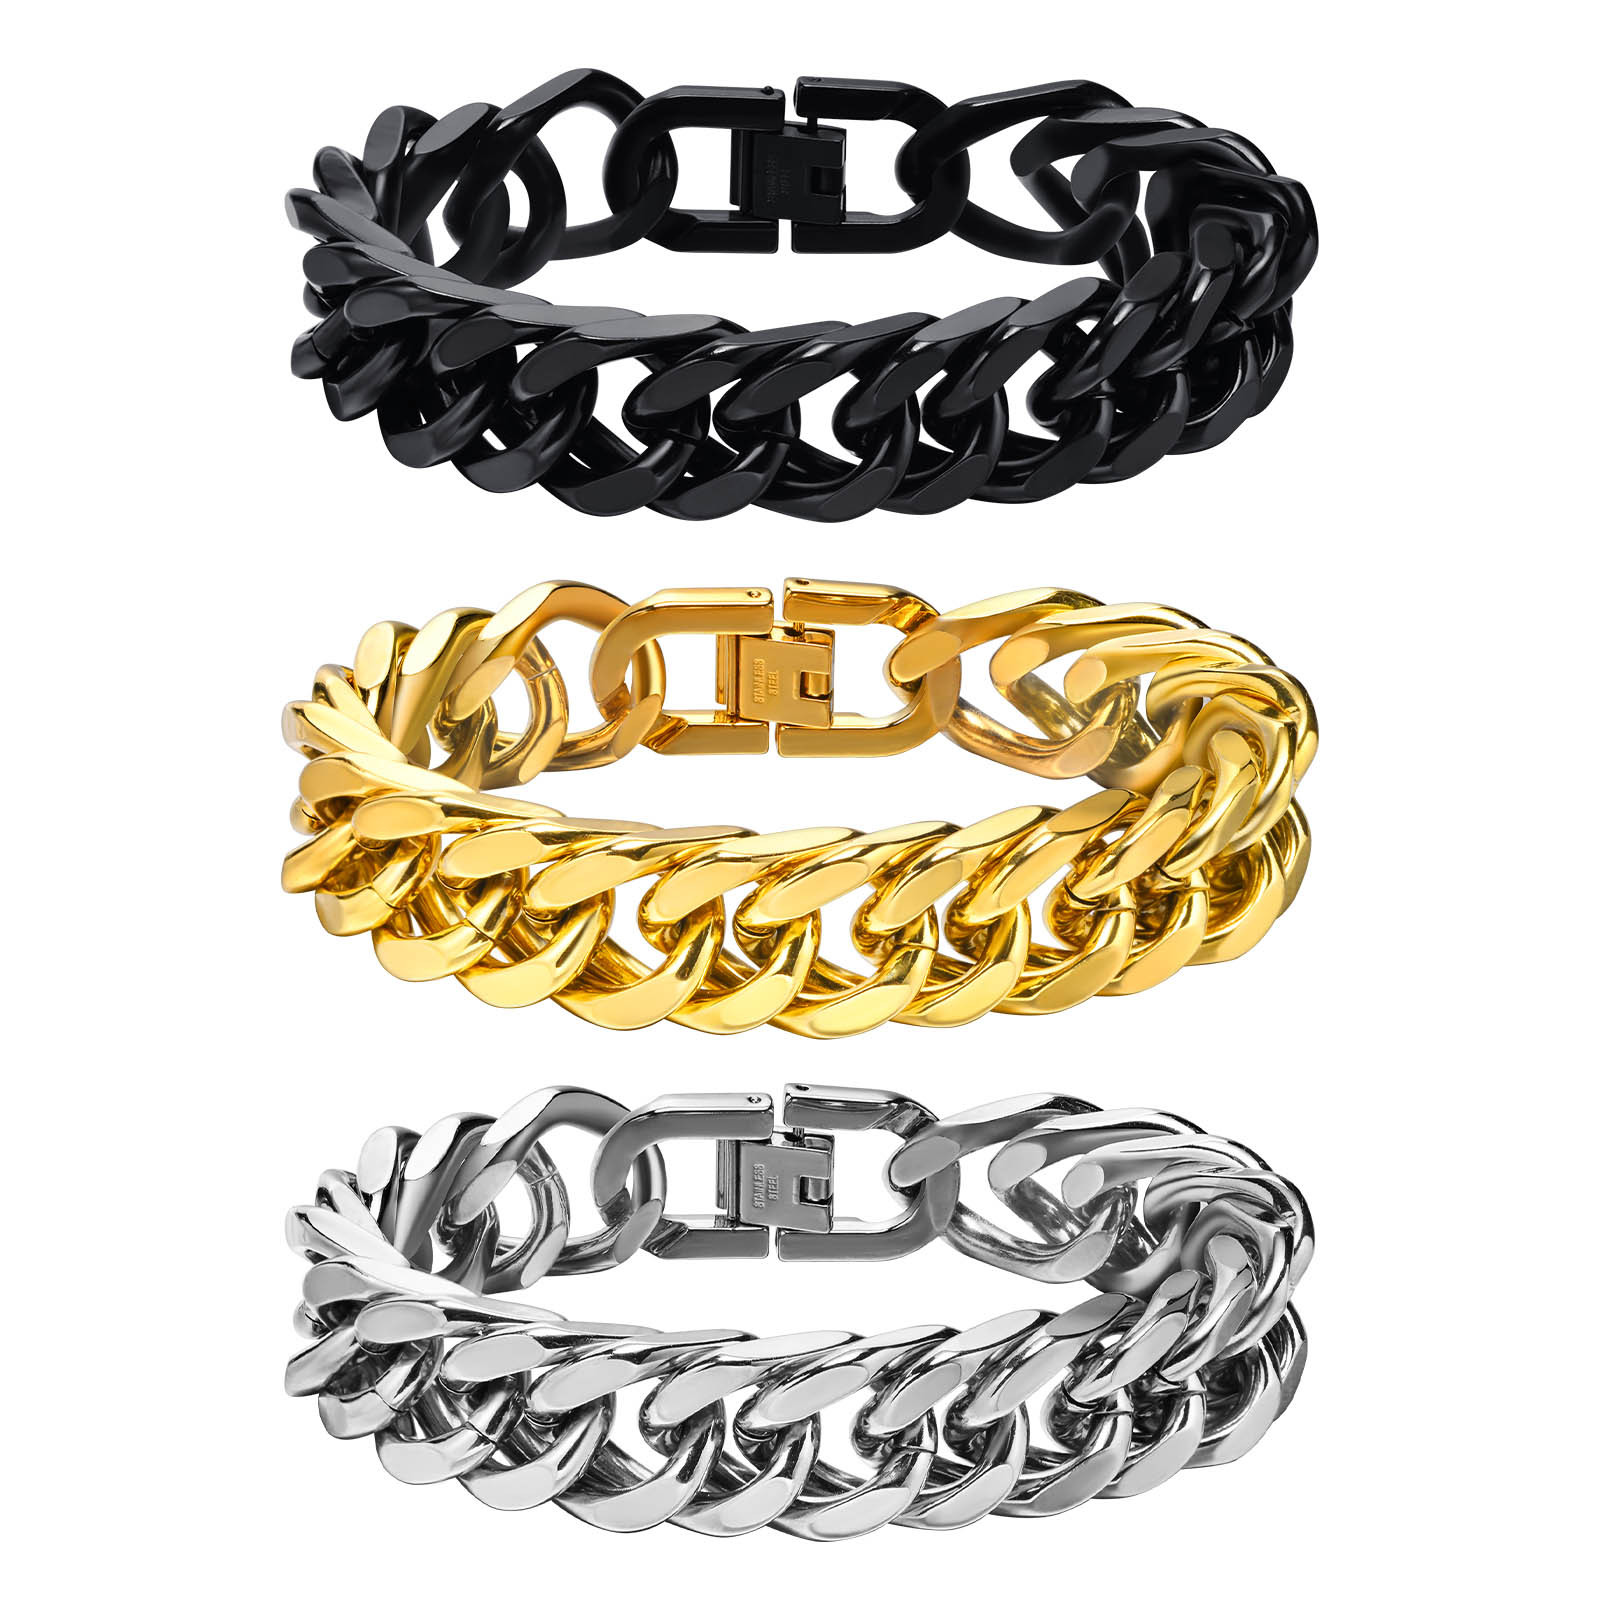 Steel chain width 15MM; bracelet total length 21.5